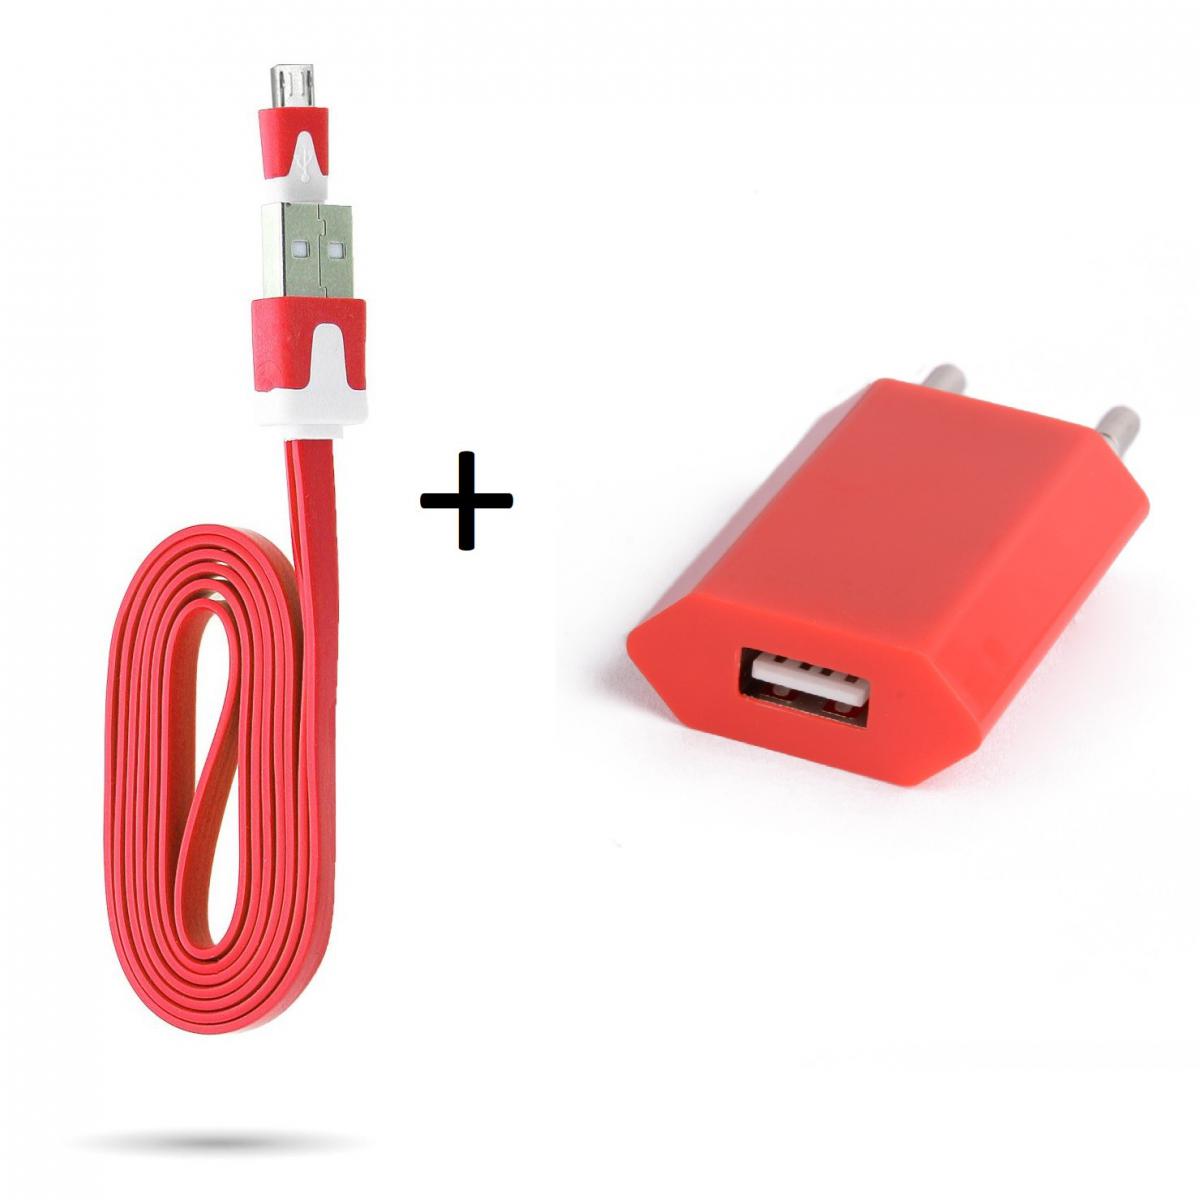 Shot - Cable Noodle 1m Chargeur + Prise Secteur pour HUAWEI Y5 2019 Smartphone Micro USB Murale Pack Android (ROUGE) - Chargeur secteur téléphone